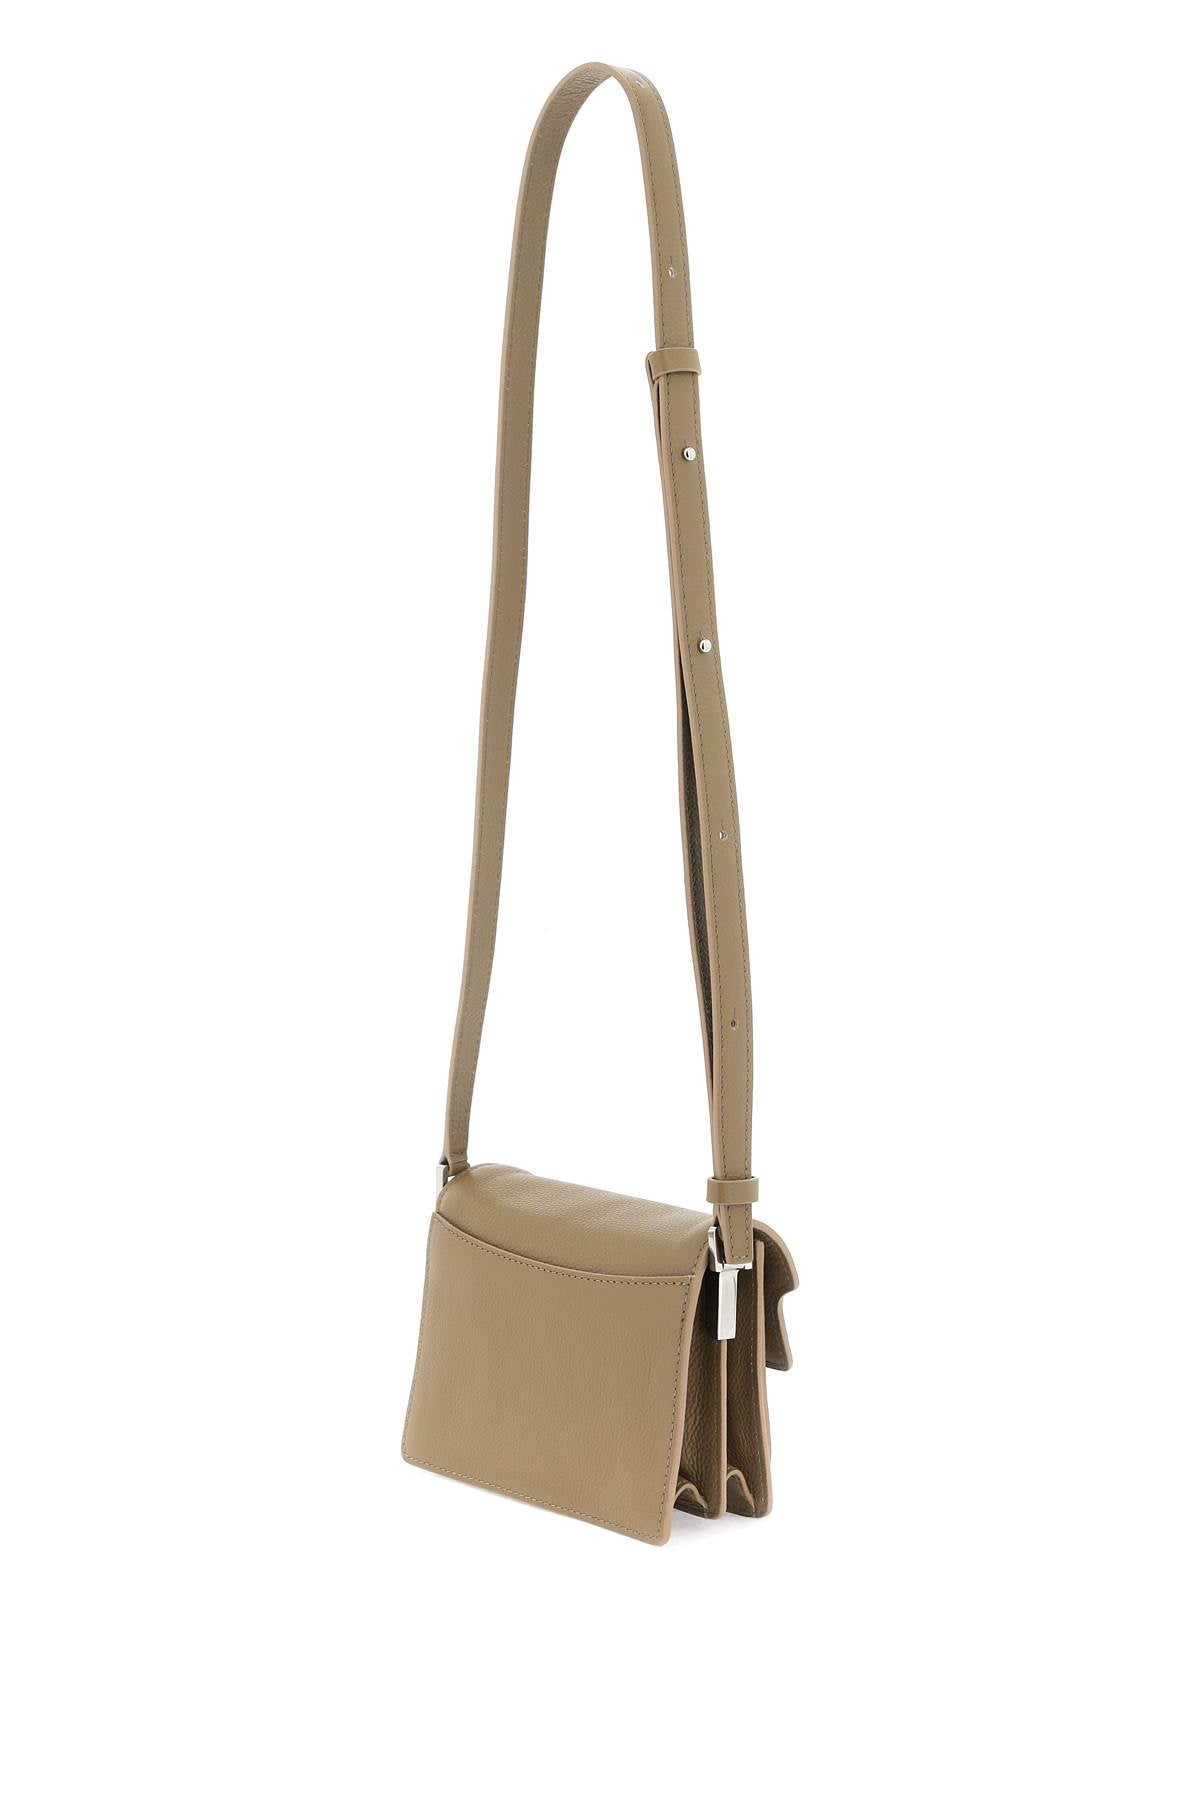 Marni mini soft trunk shoulder bag-women > bags > general > cross body & shoulder bags-Marni-Urbanheer